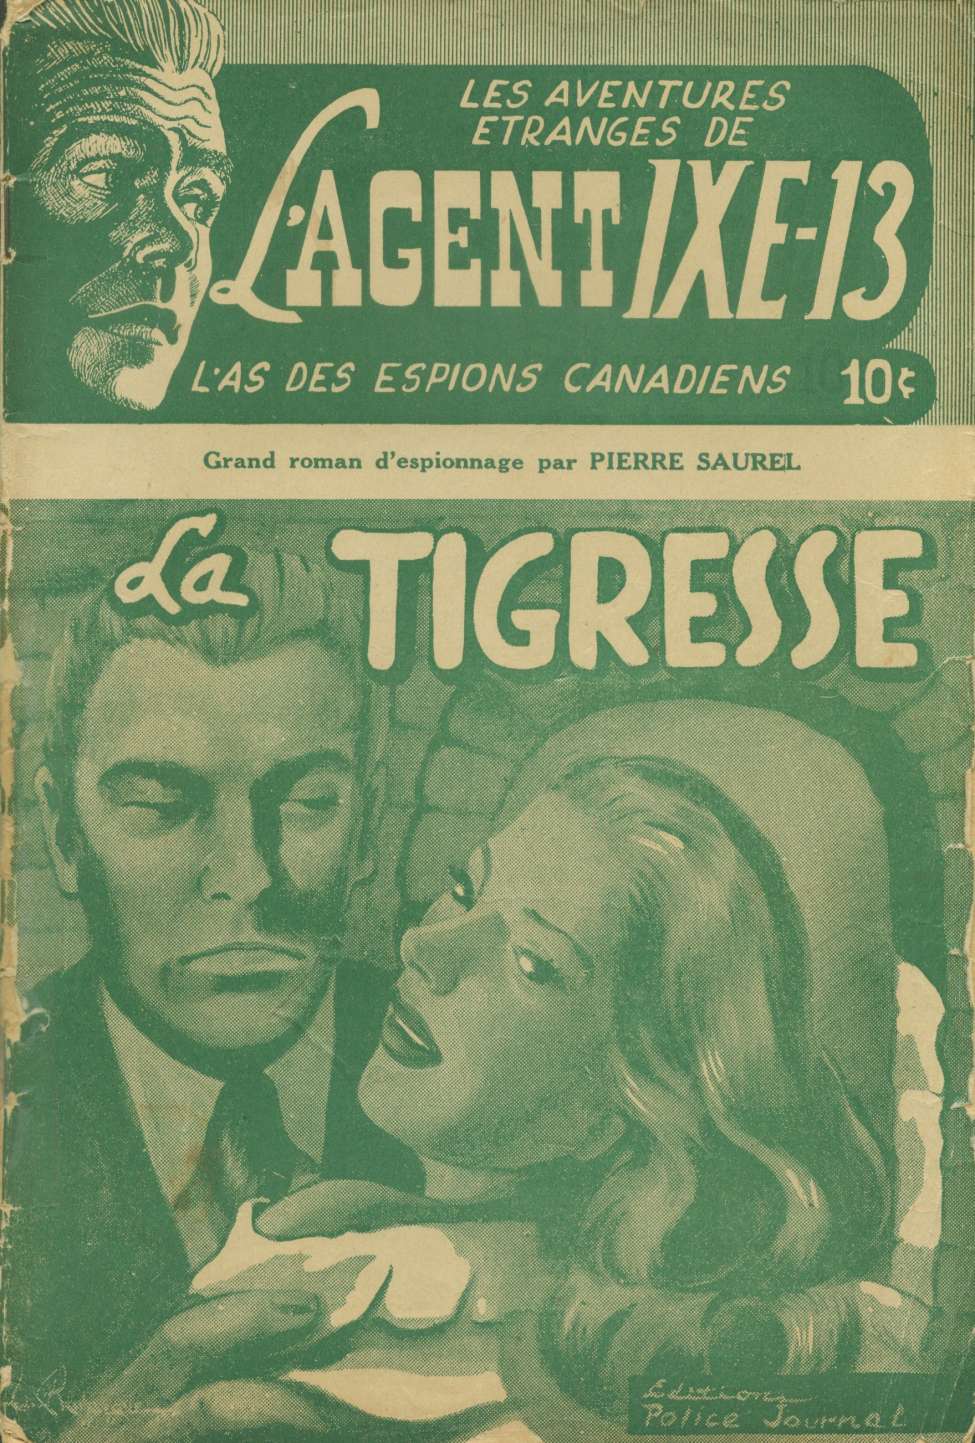 Book Cover For L'Agent IXE-13 v1 2 - La tigresse